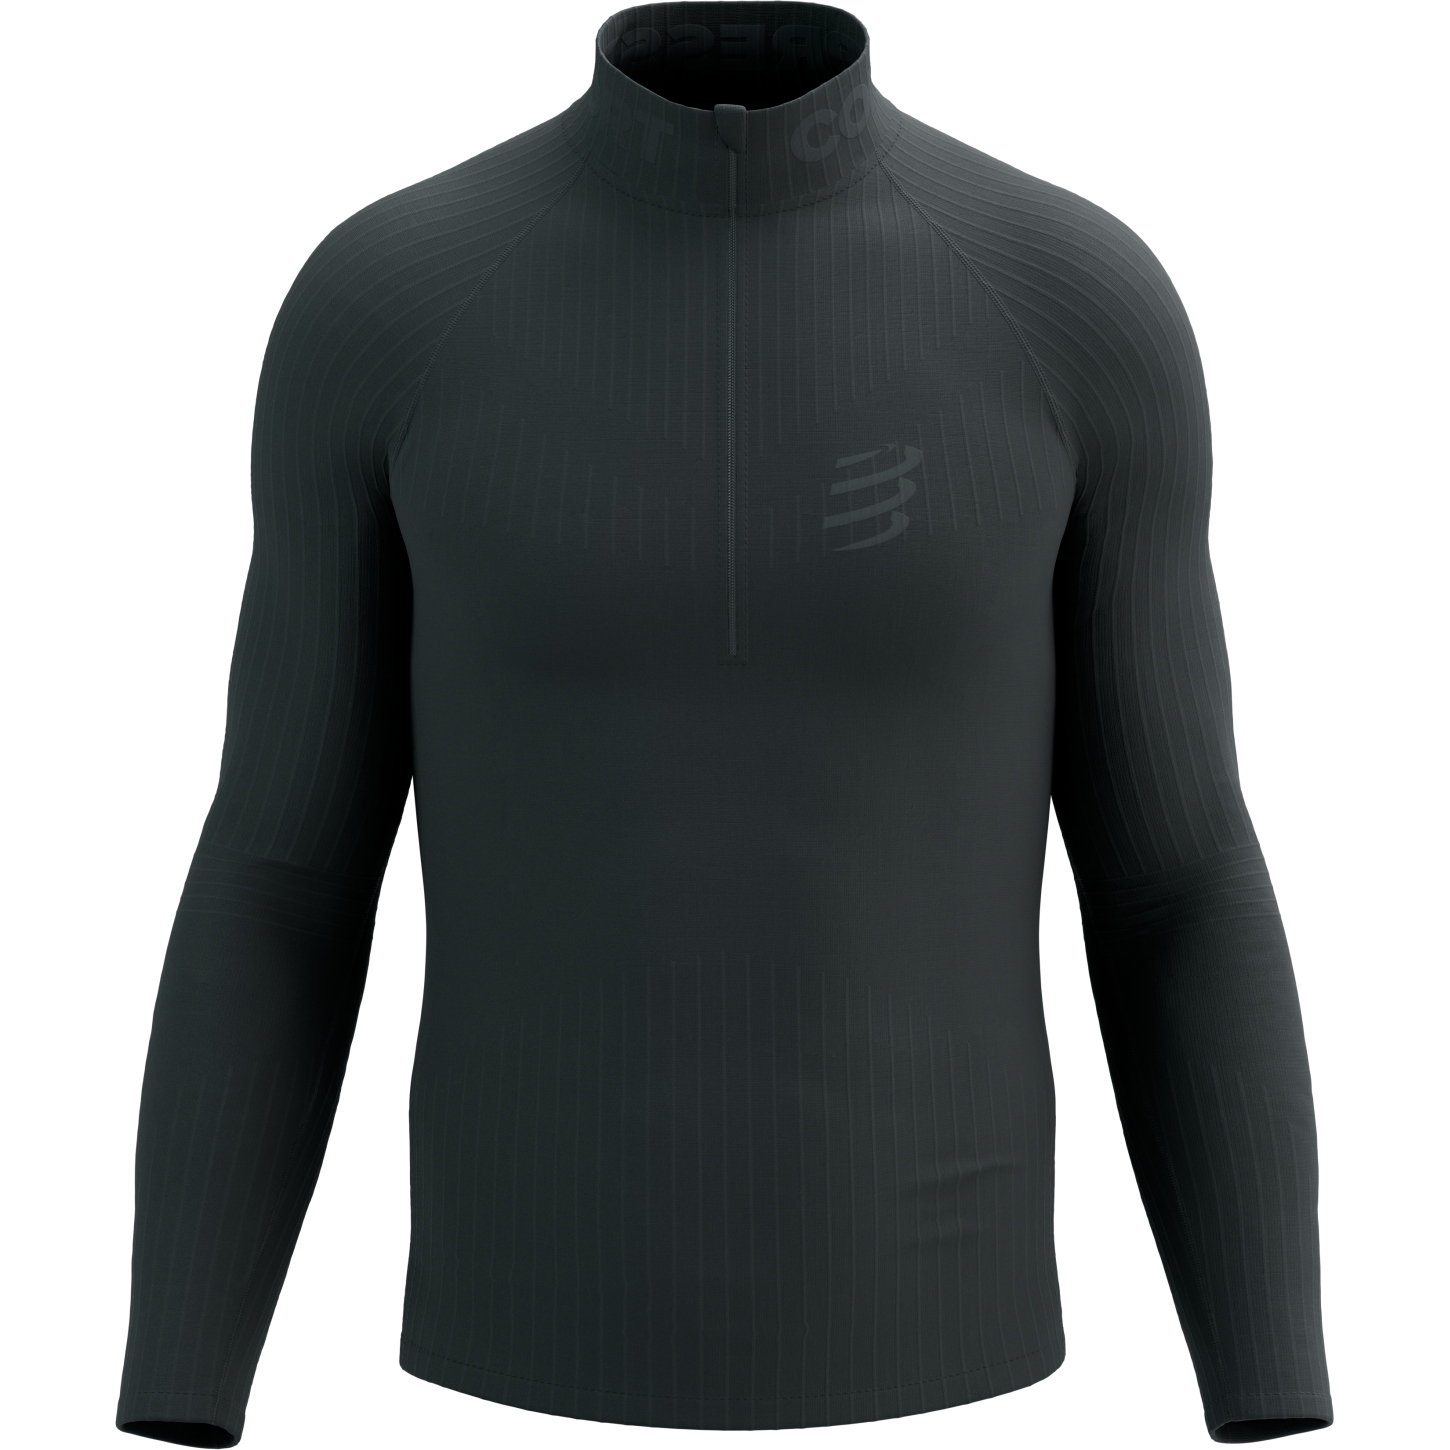 Productfoto van Compressport 3D Thermo Half Zip Shirt met Lange Mouwen - zwart